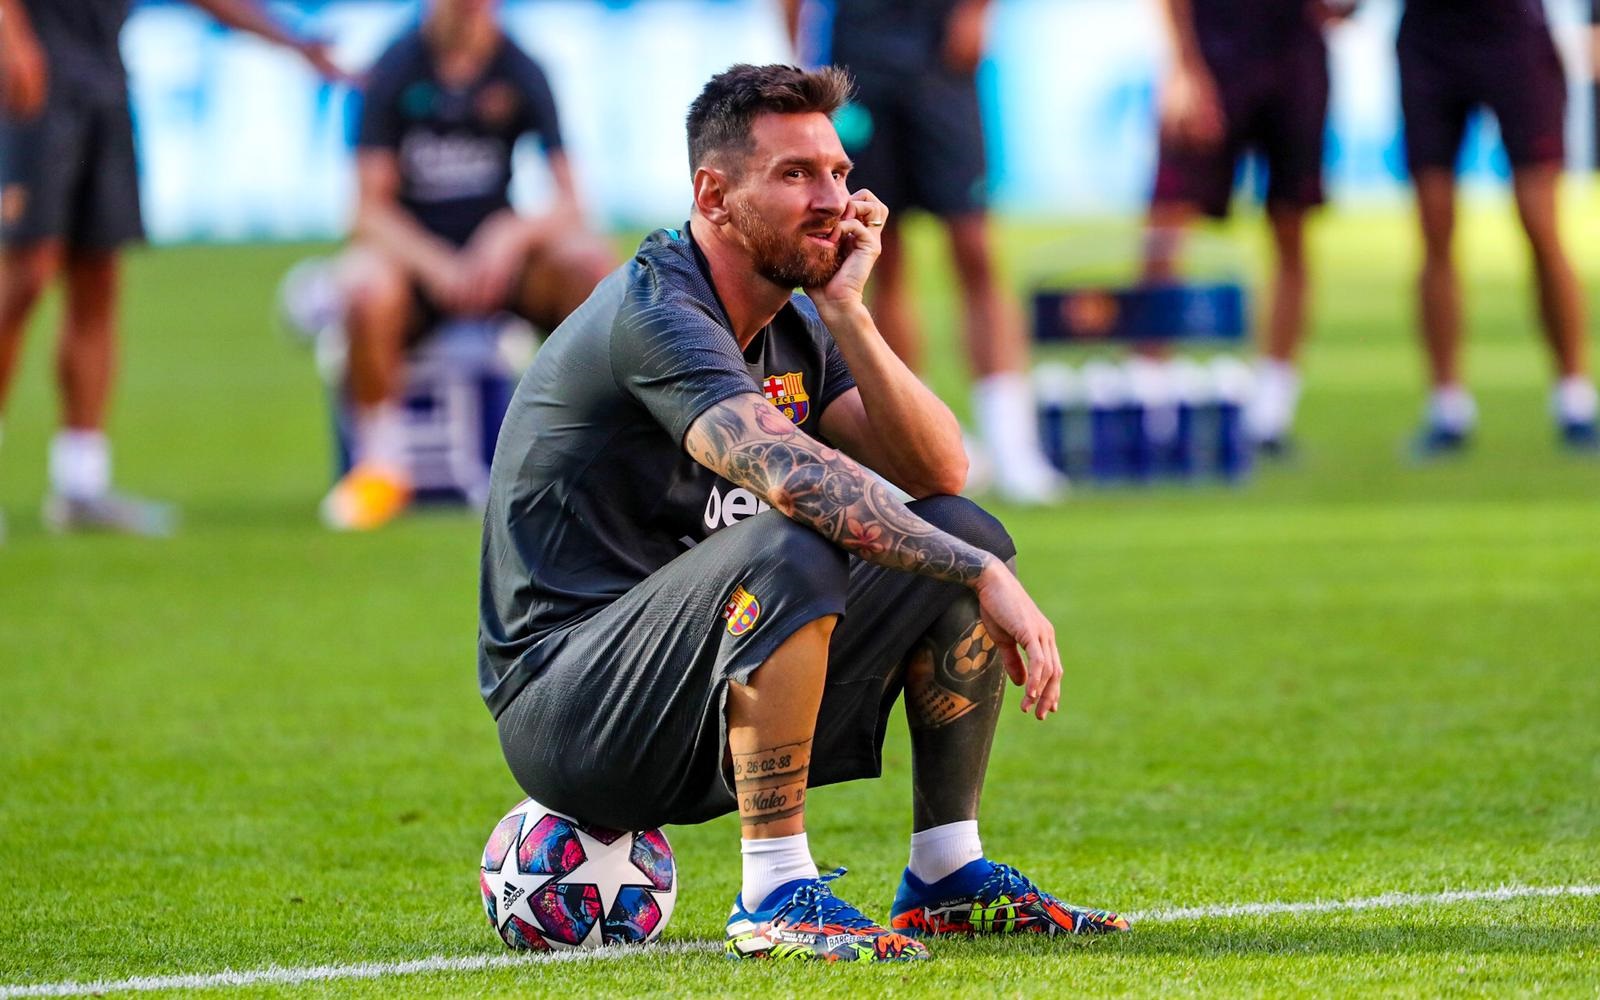 Bintang Barcelona, Lionel Messi dikabarkan sedang bimbang setelah kegagalan Barcelona di berbagai ajang. (Foto: Twitter/@FCBarcelona)